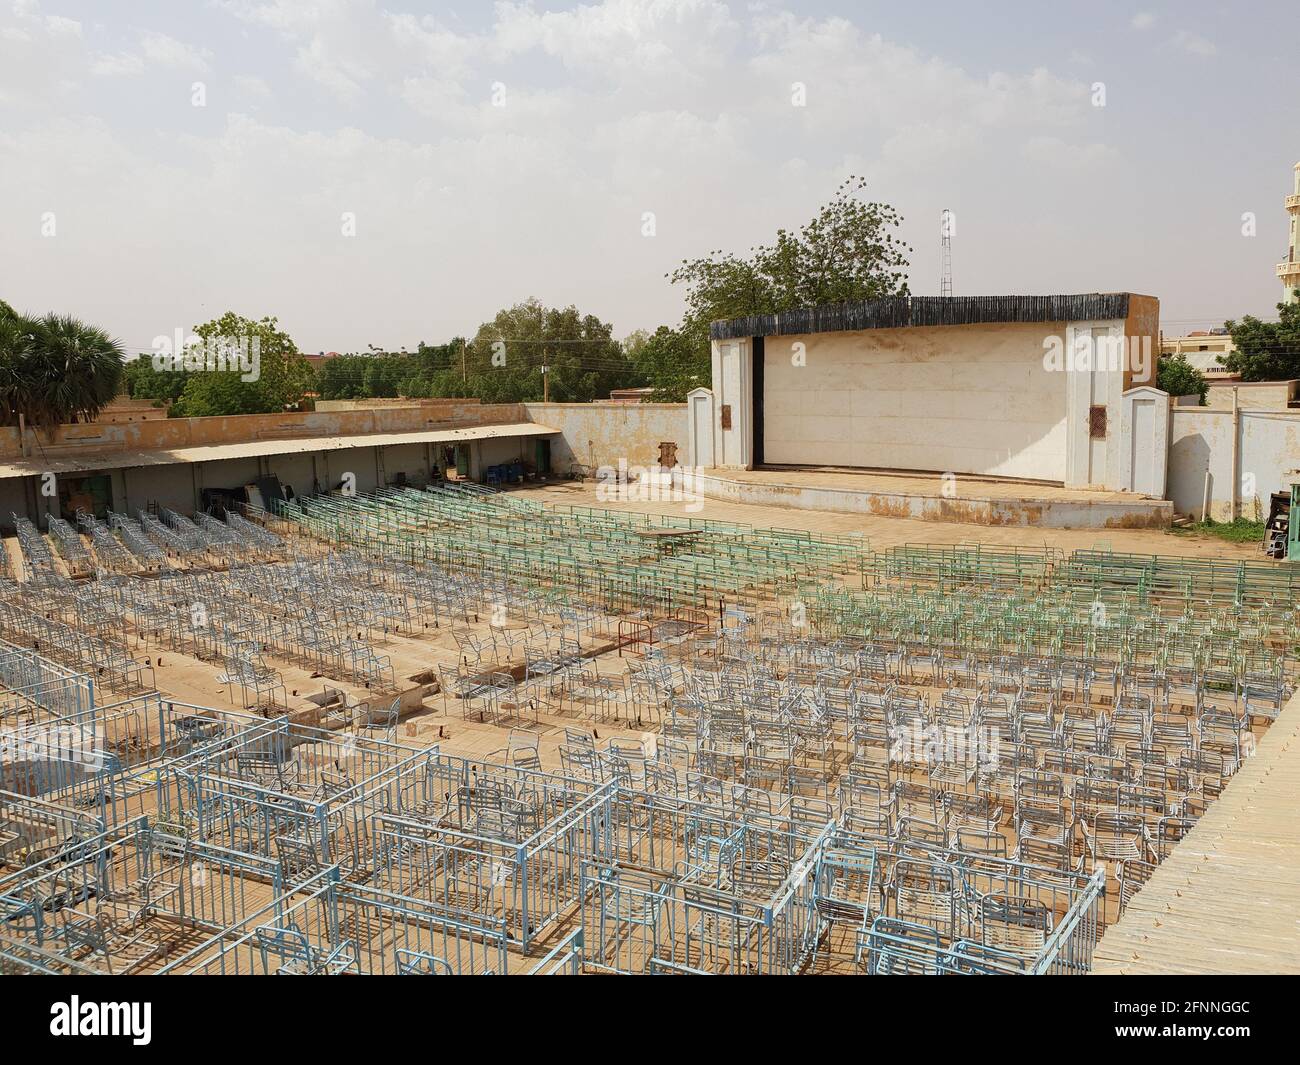 OMDURMAN, SOUDAN - 30 septembre 2019 : le cinéma Althawra ou le cinéma Alhara Alrabaa est l'un des plus anciens cinémas du Soudan. Banque D'Images